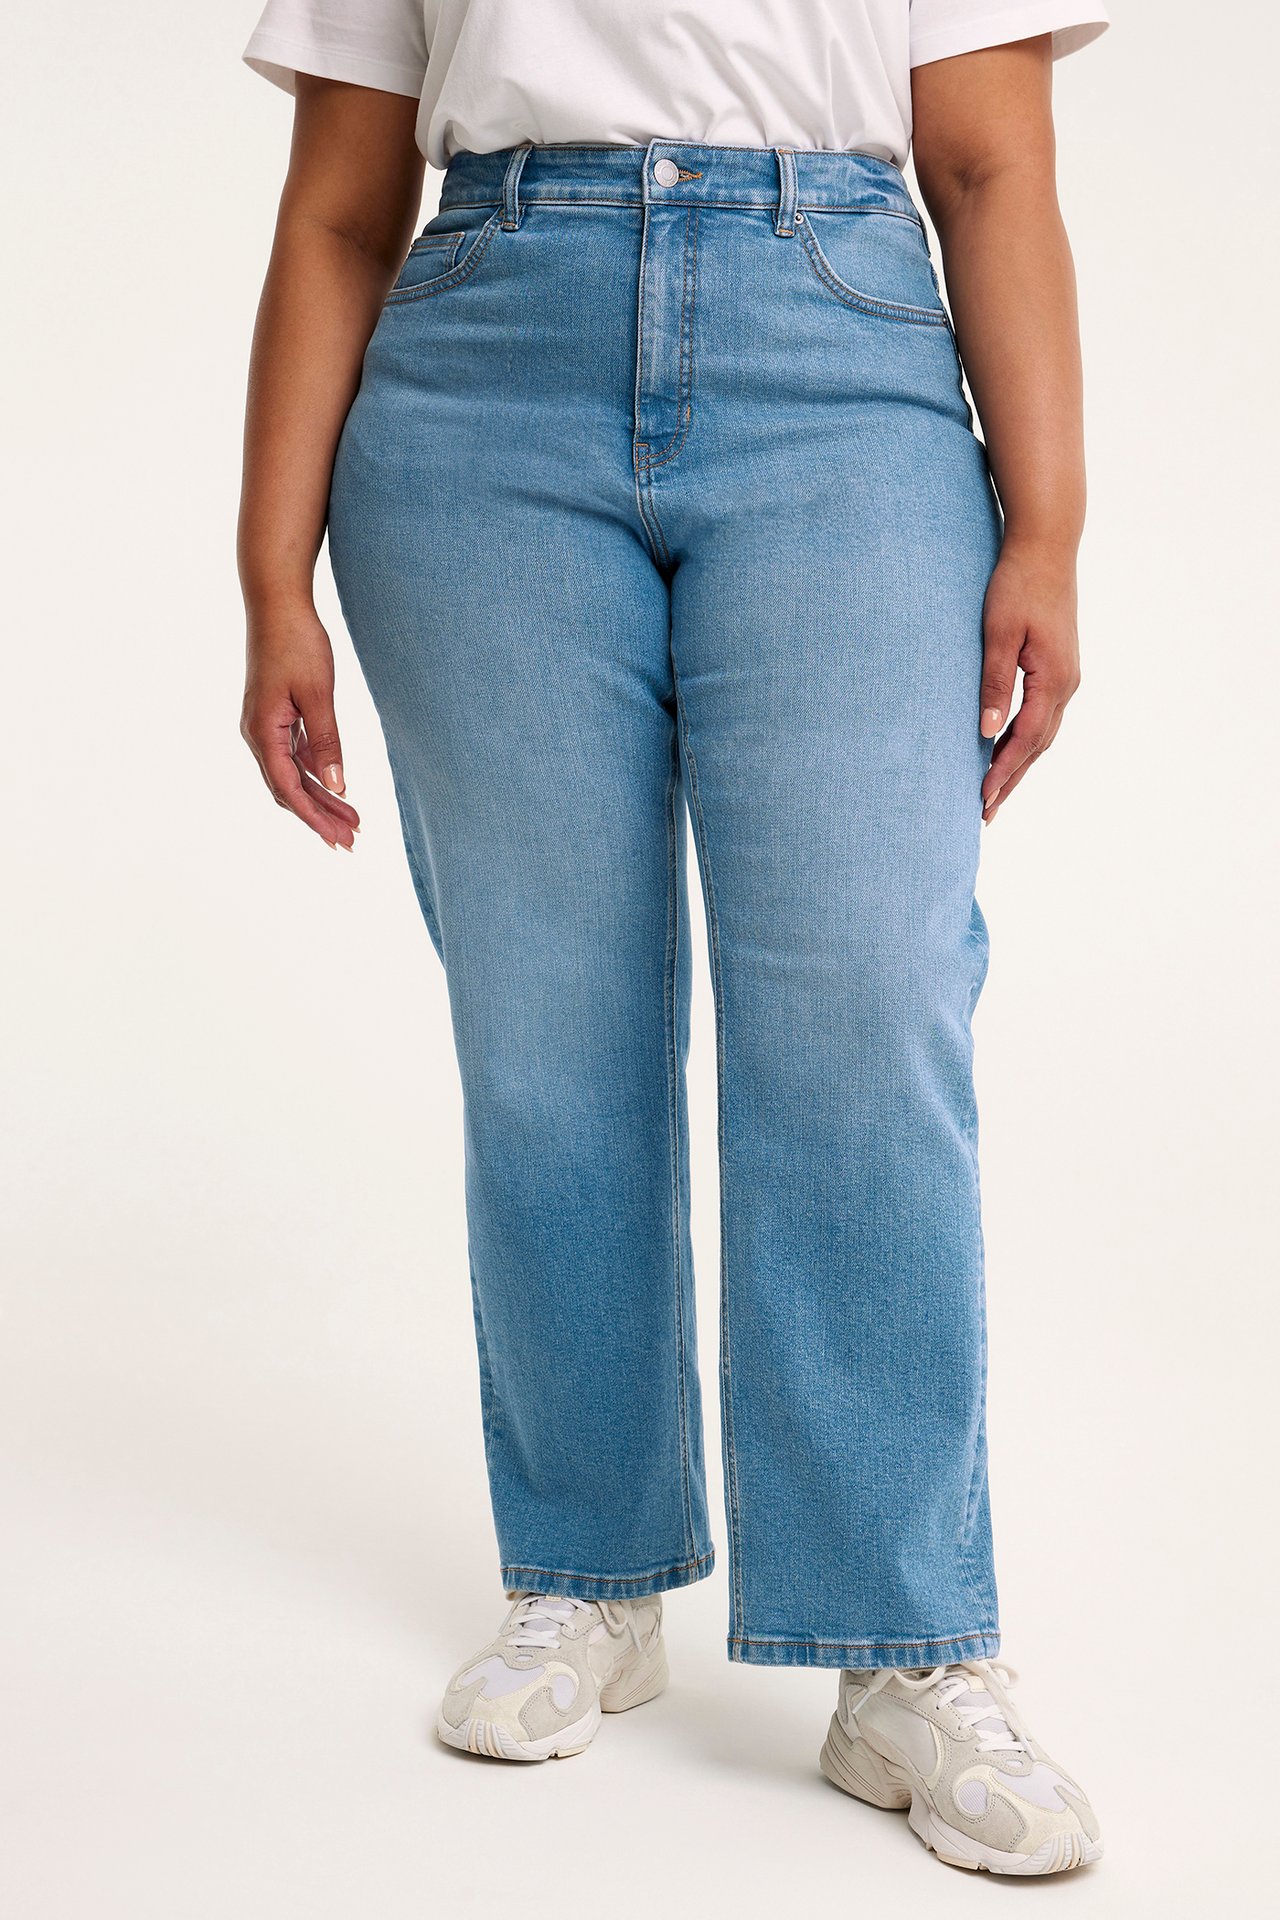 Ariel straght jeans Vaalea denimi - null - 1